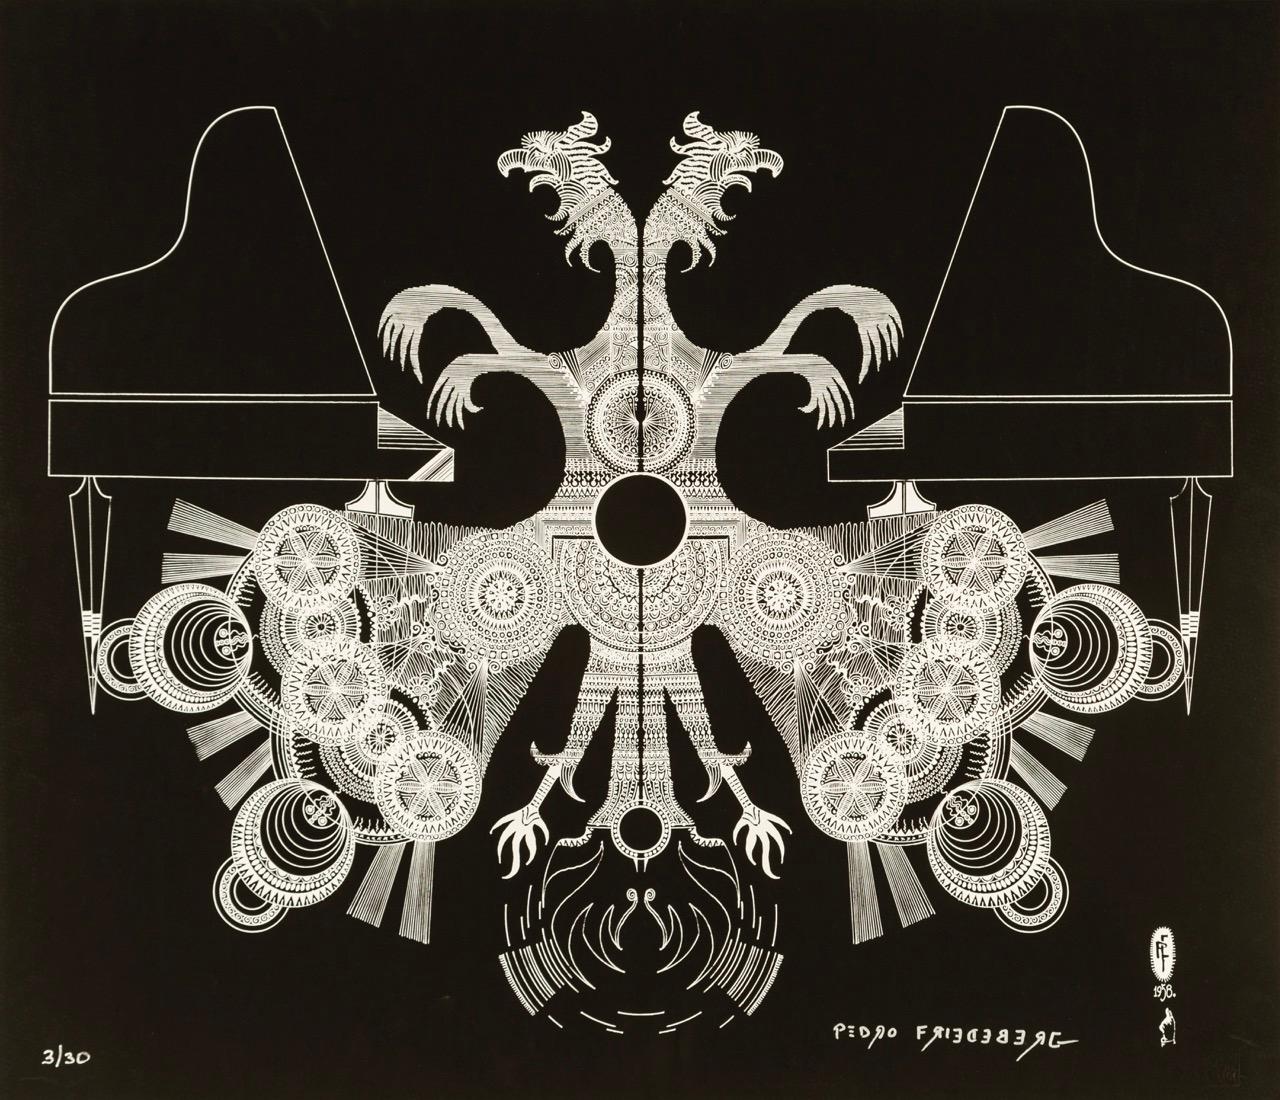 Pedro Friedeberg Figurative Print – "Dragones musicales I" zeitgenössische surrealistische Drachen Klavier schwarz-weiß 